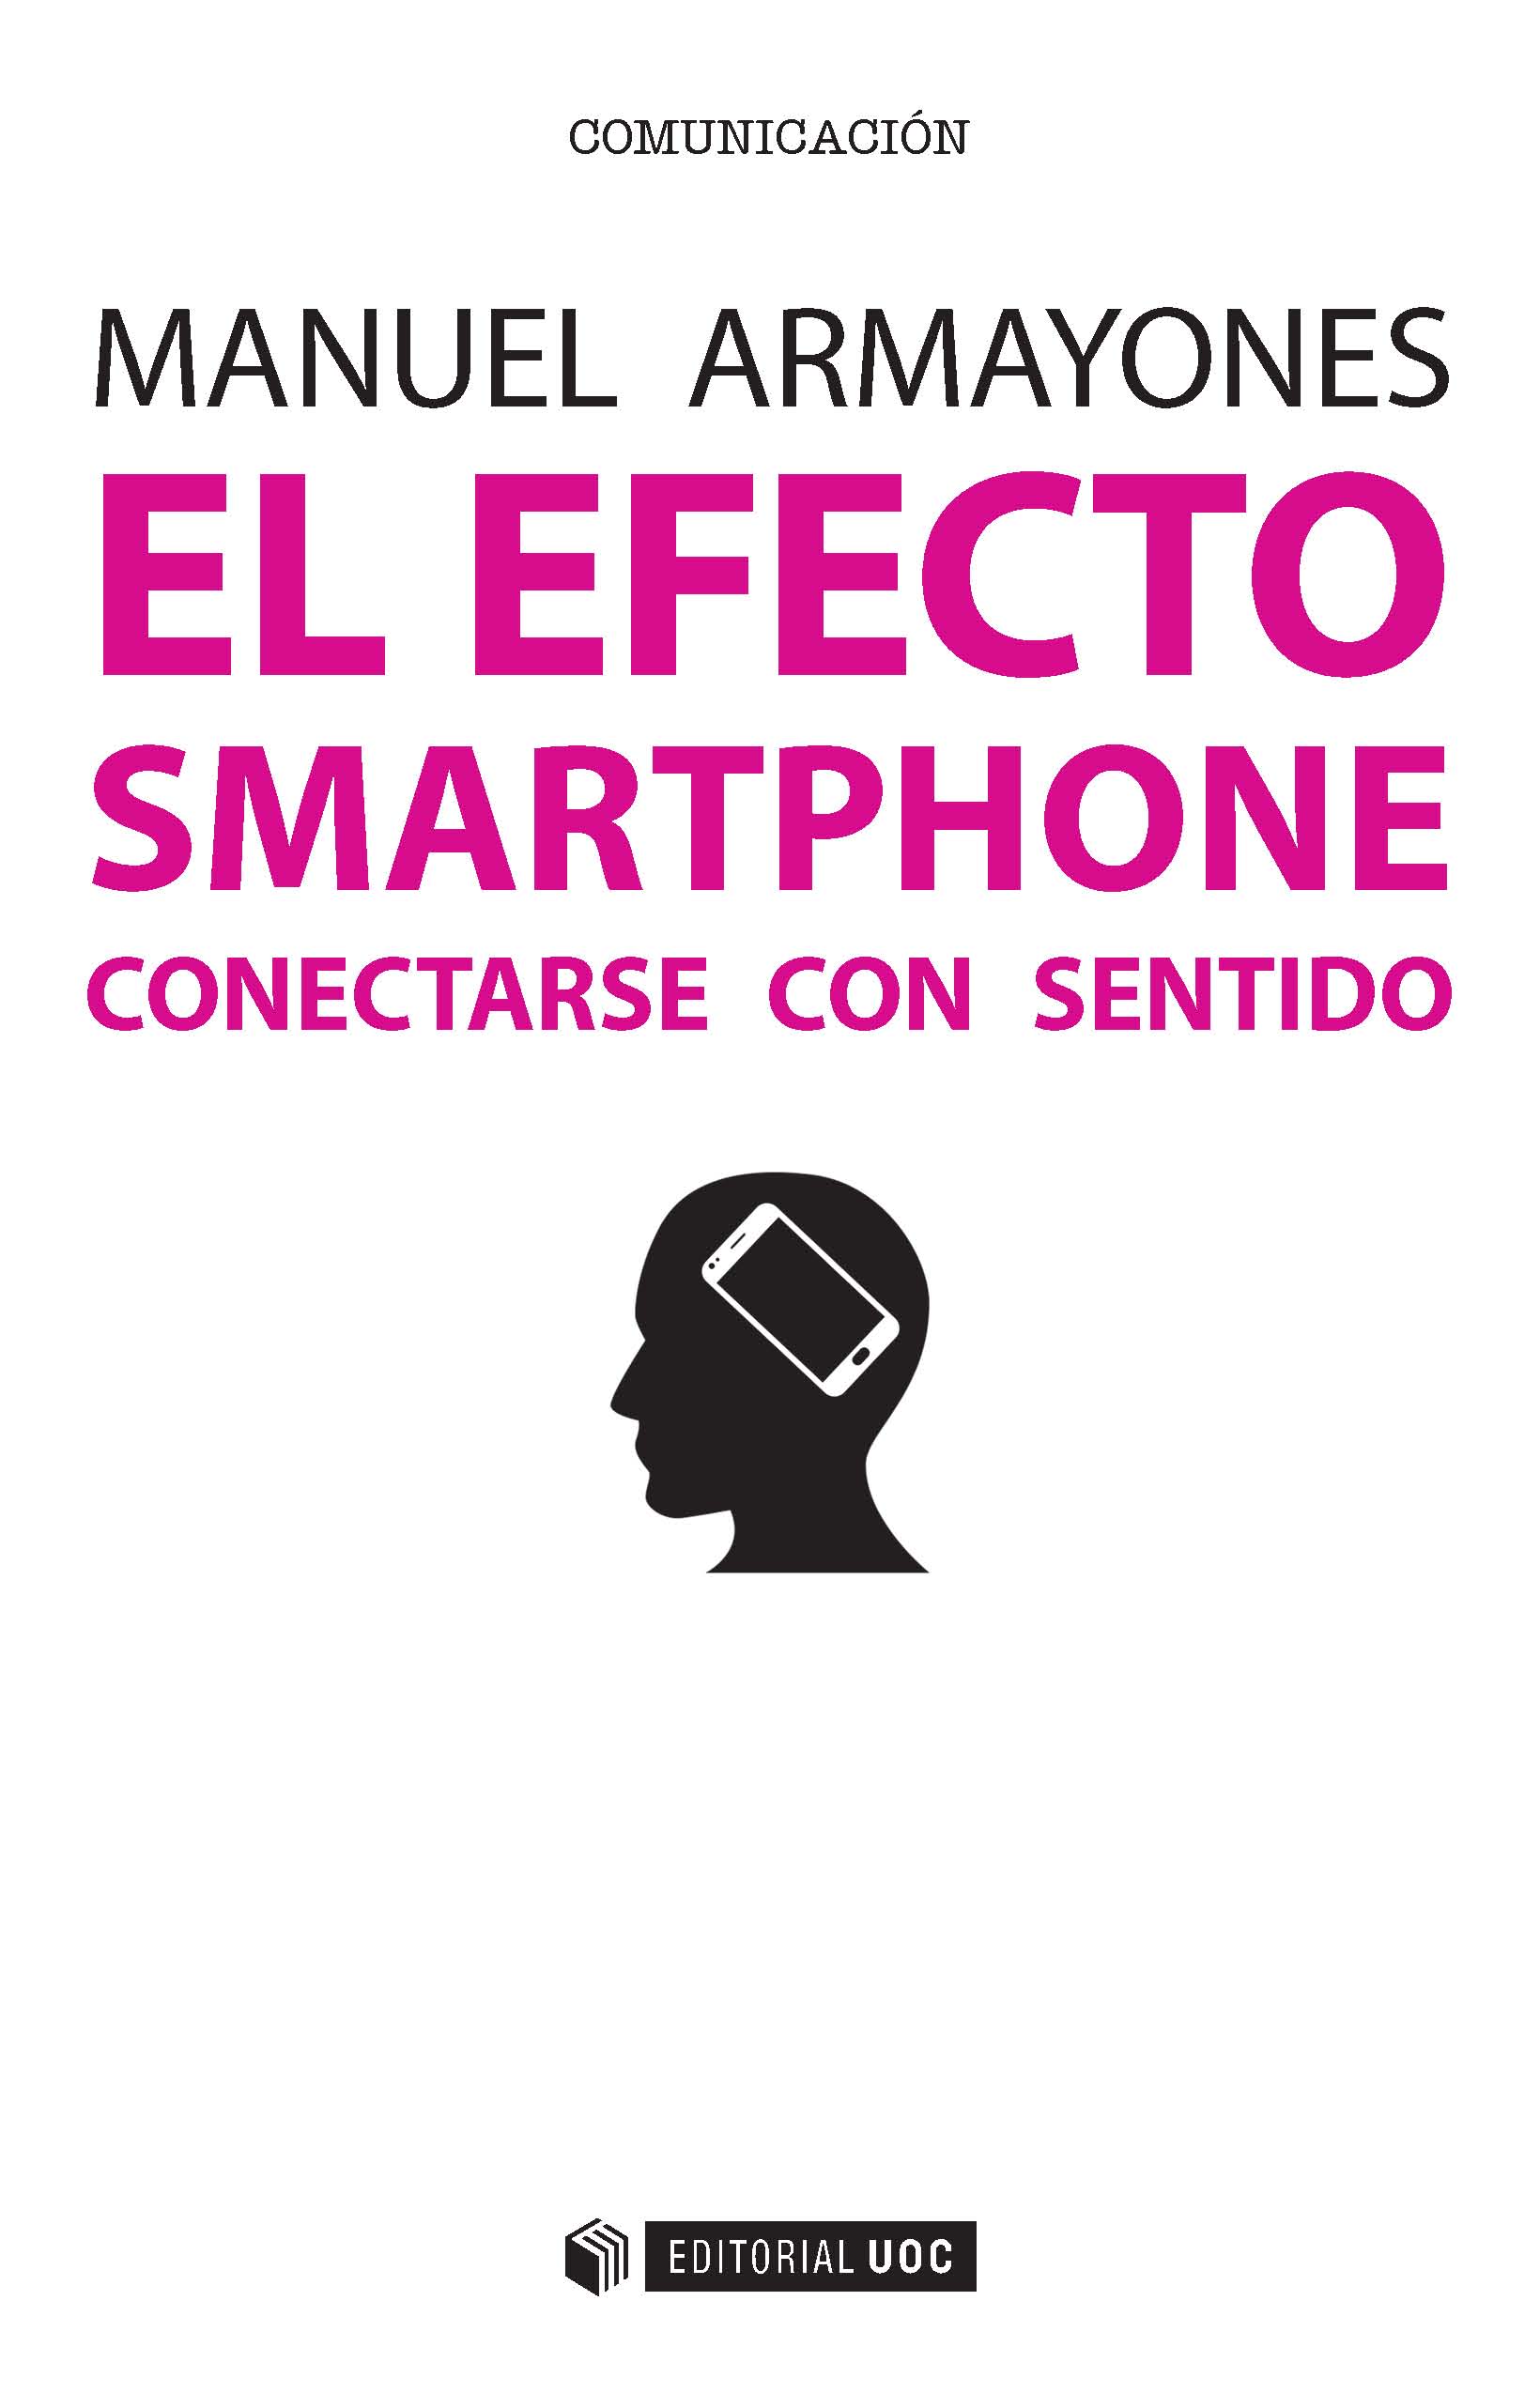 El efecto smartphone